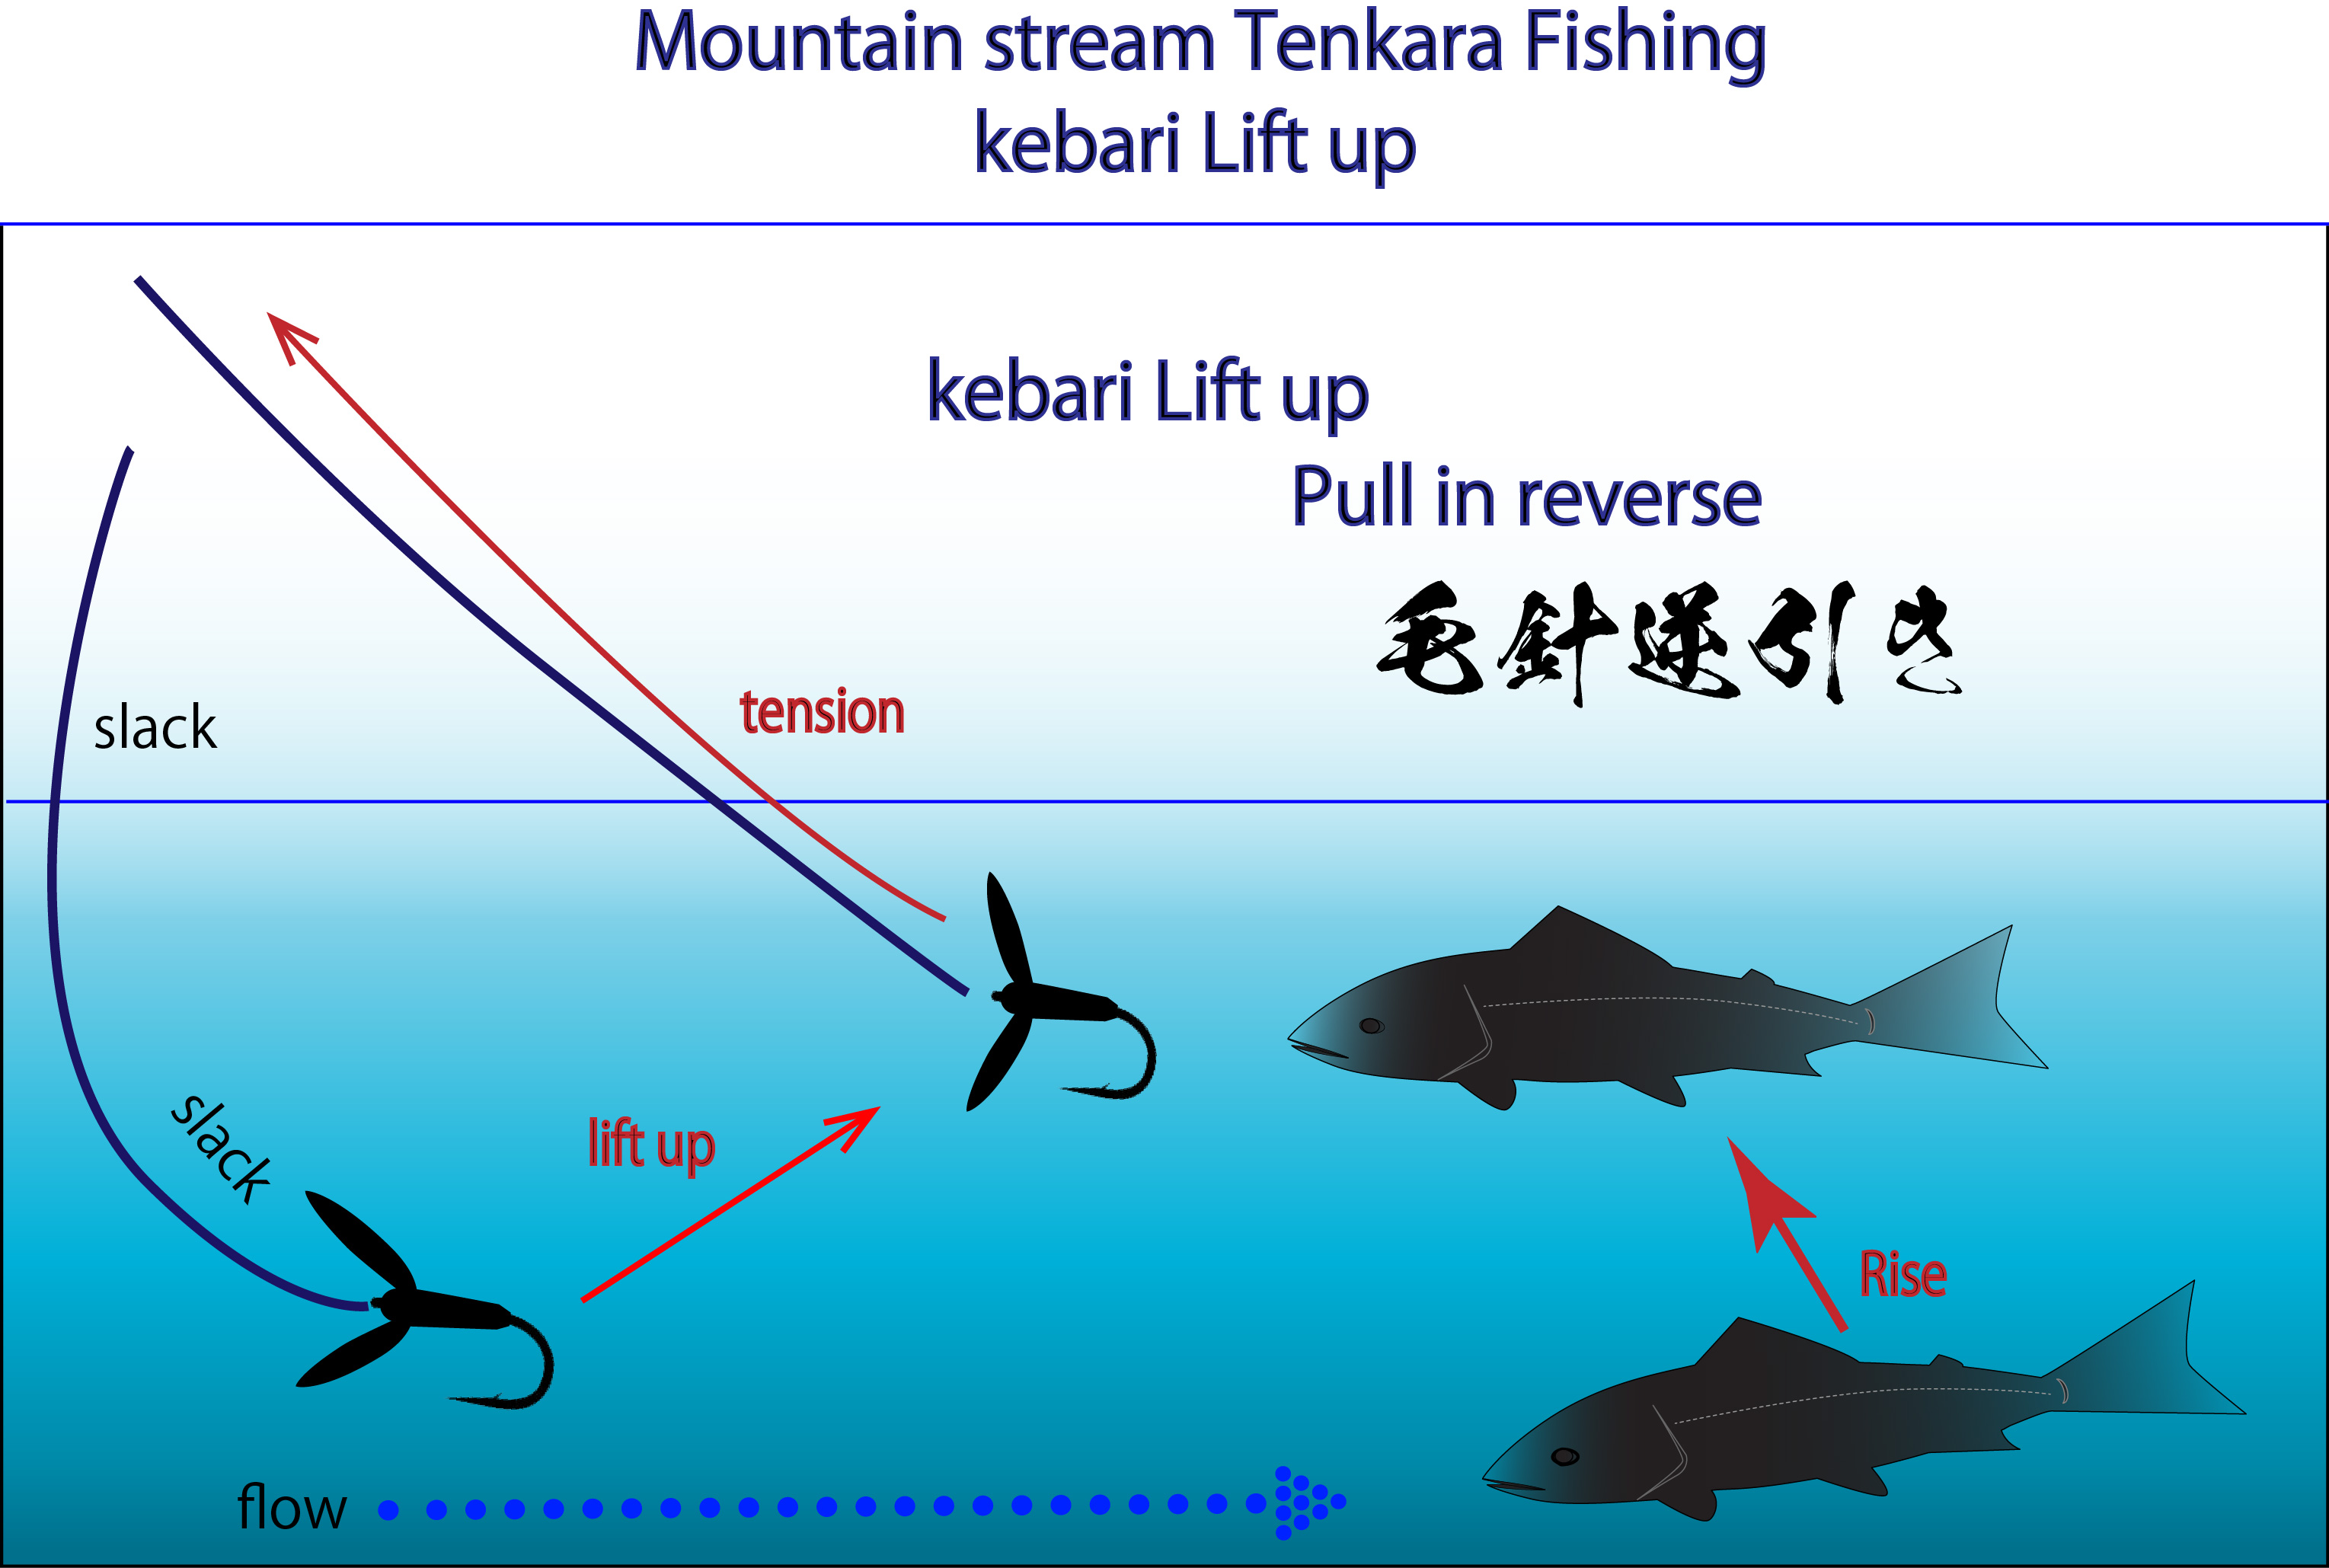 kebari Lift upMountain stream Tenkara Fishing